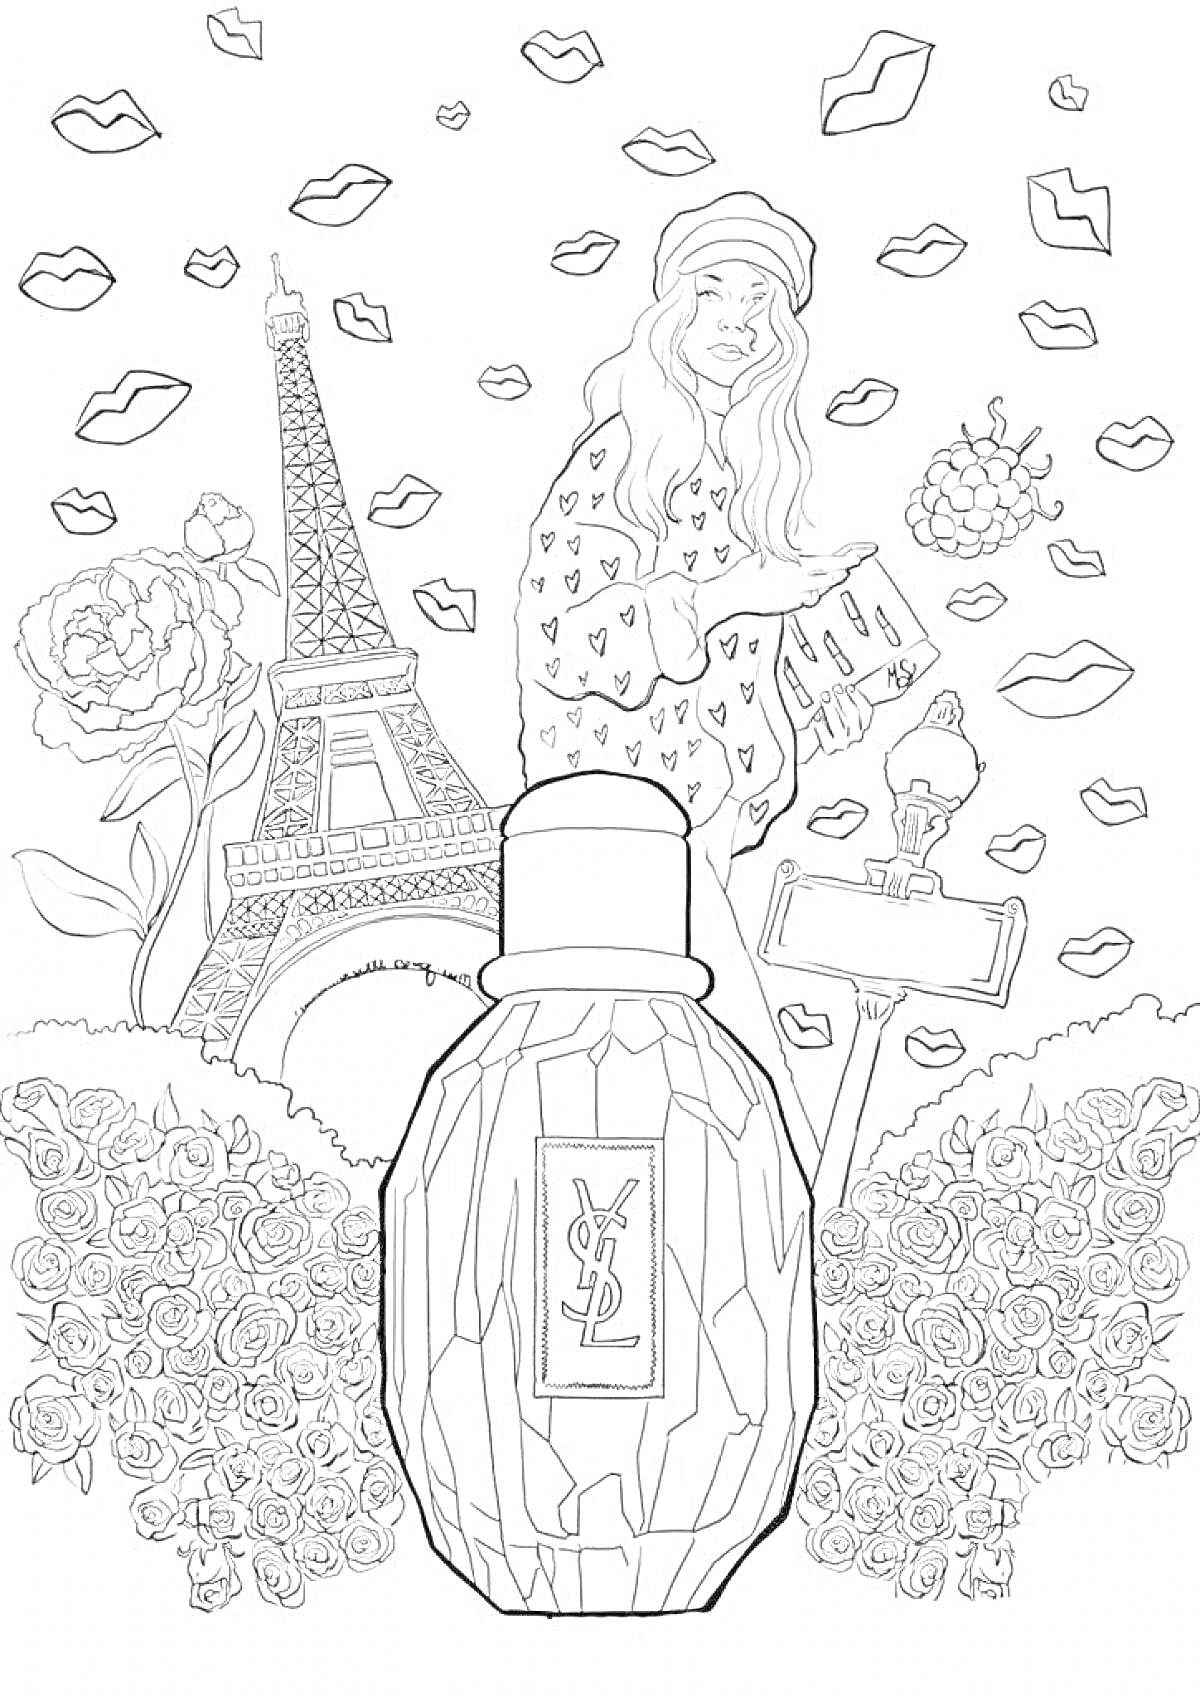 Парижская мечта - Эйфелева башня, девушка, духи, розы, губы